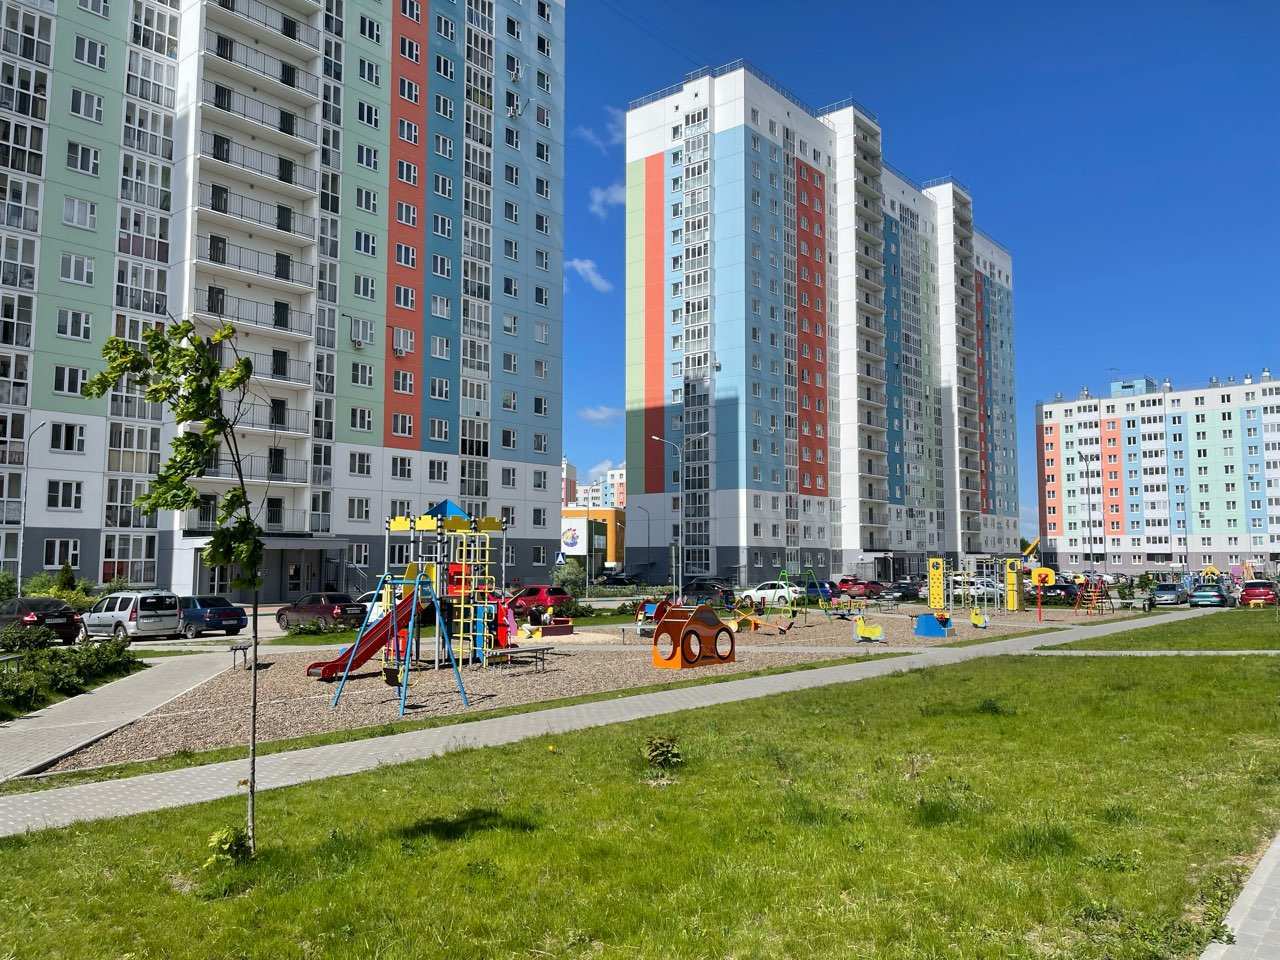 Нижний Новгород вошел в топ-15 городов с наибольшим ростом предложения жилья